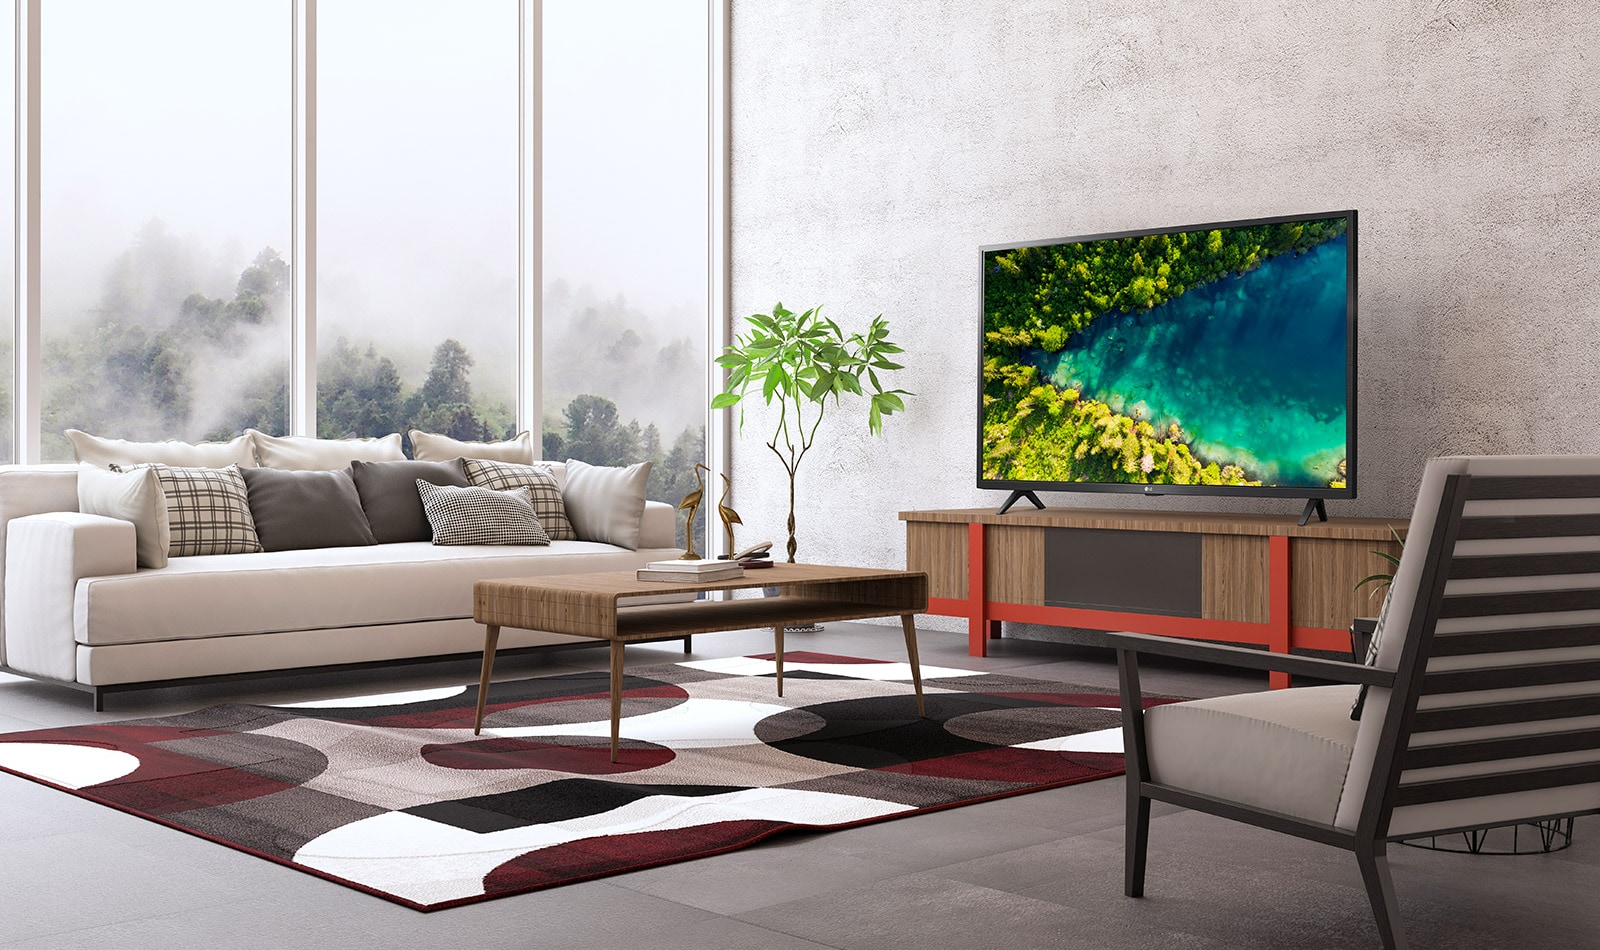 Un televisor que muestra un río que fluye en un denso bosque vista de arriba desde una casa moderna y sencilla.